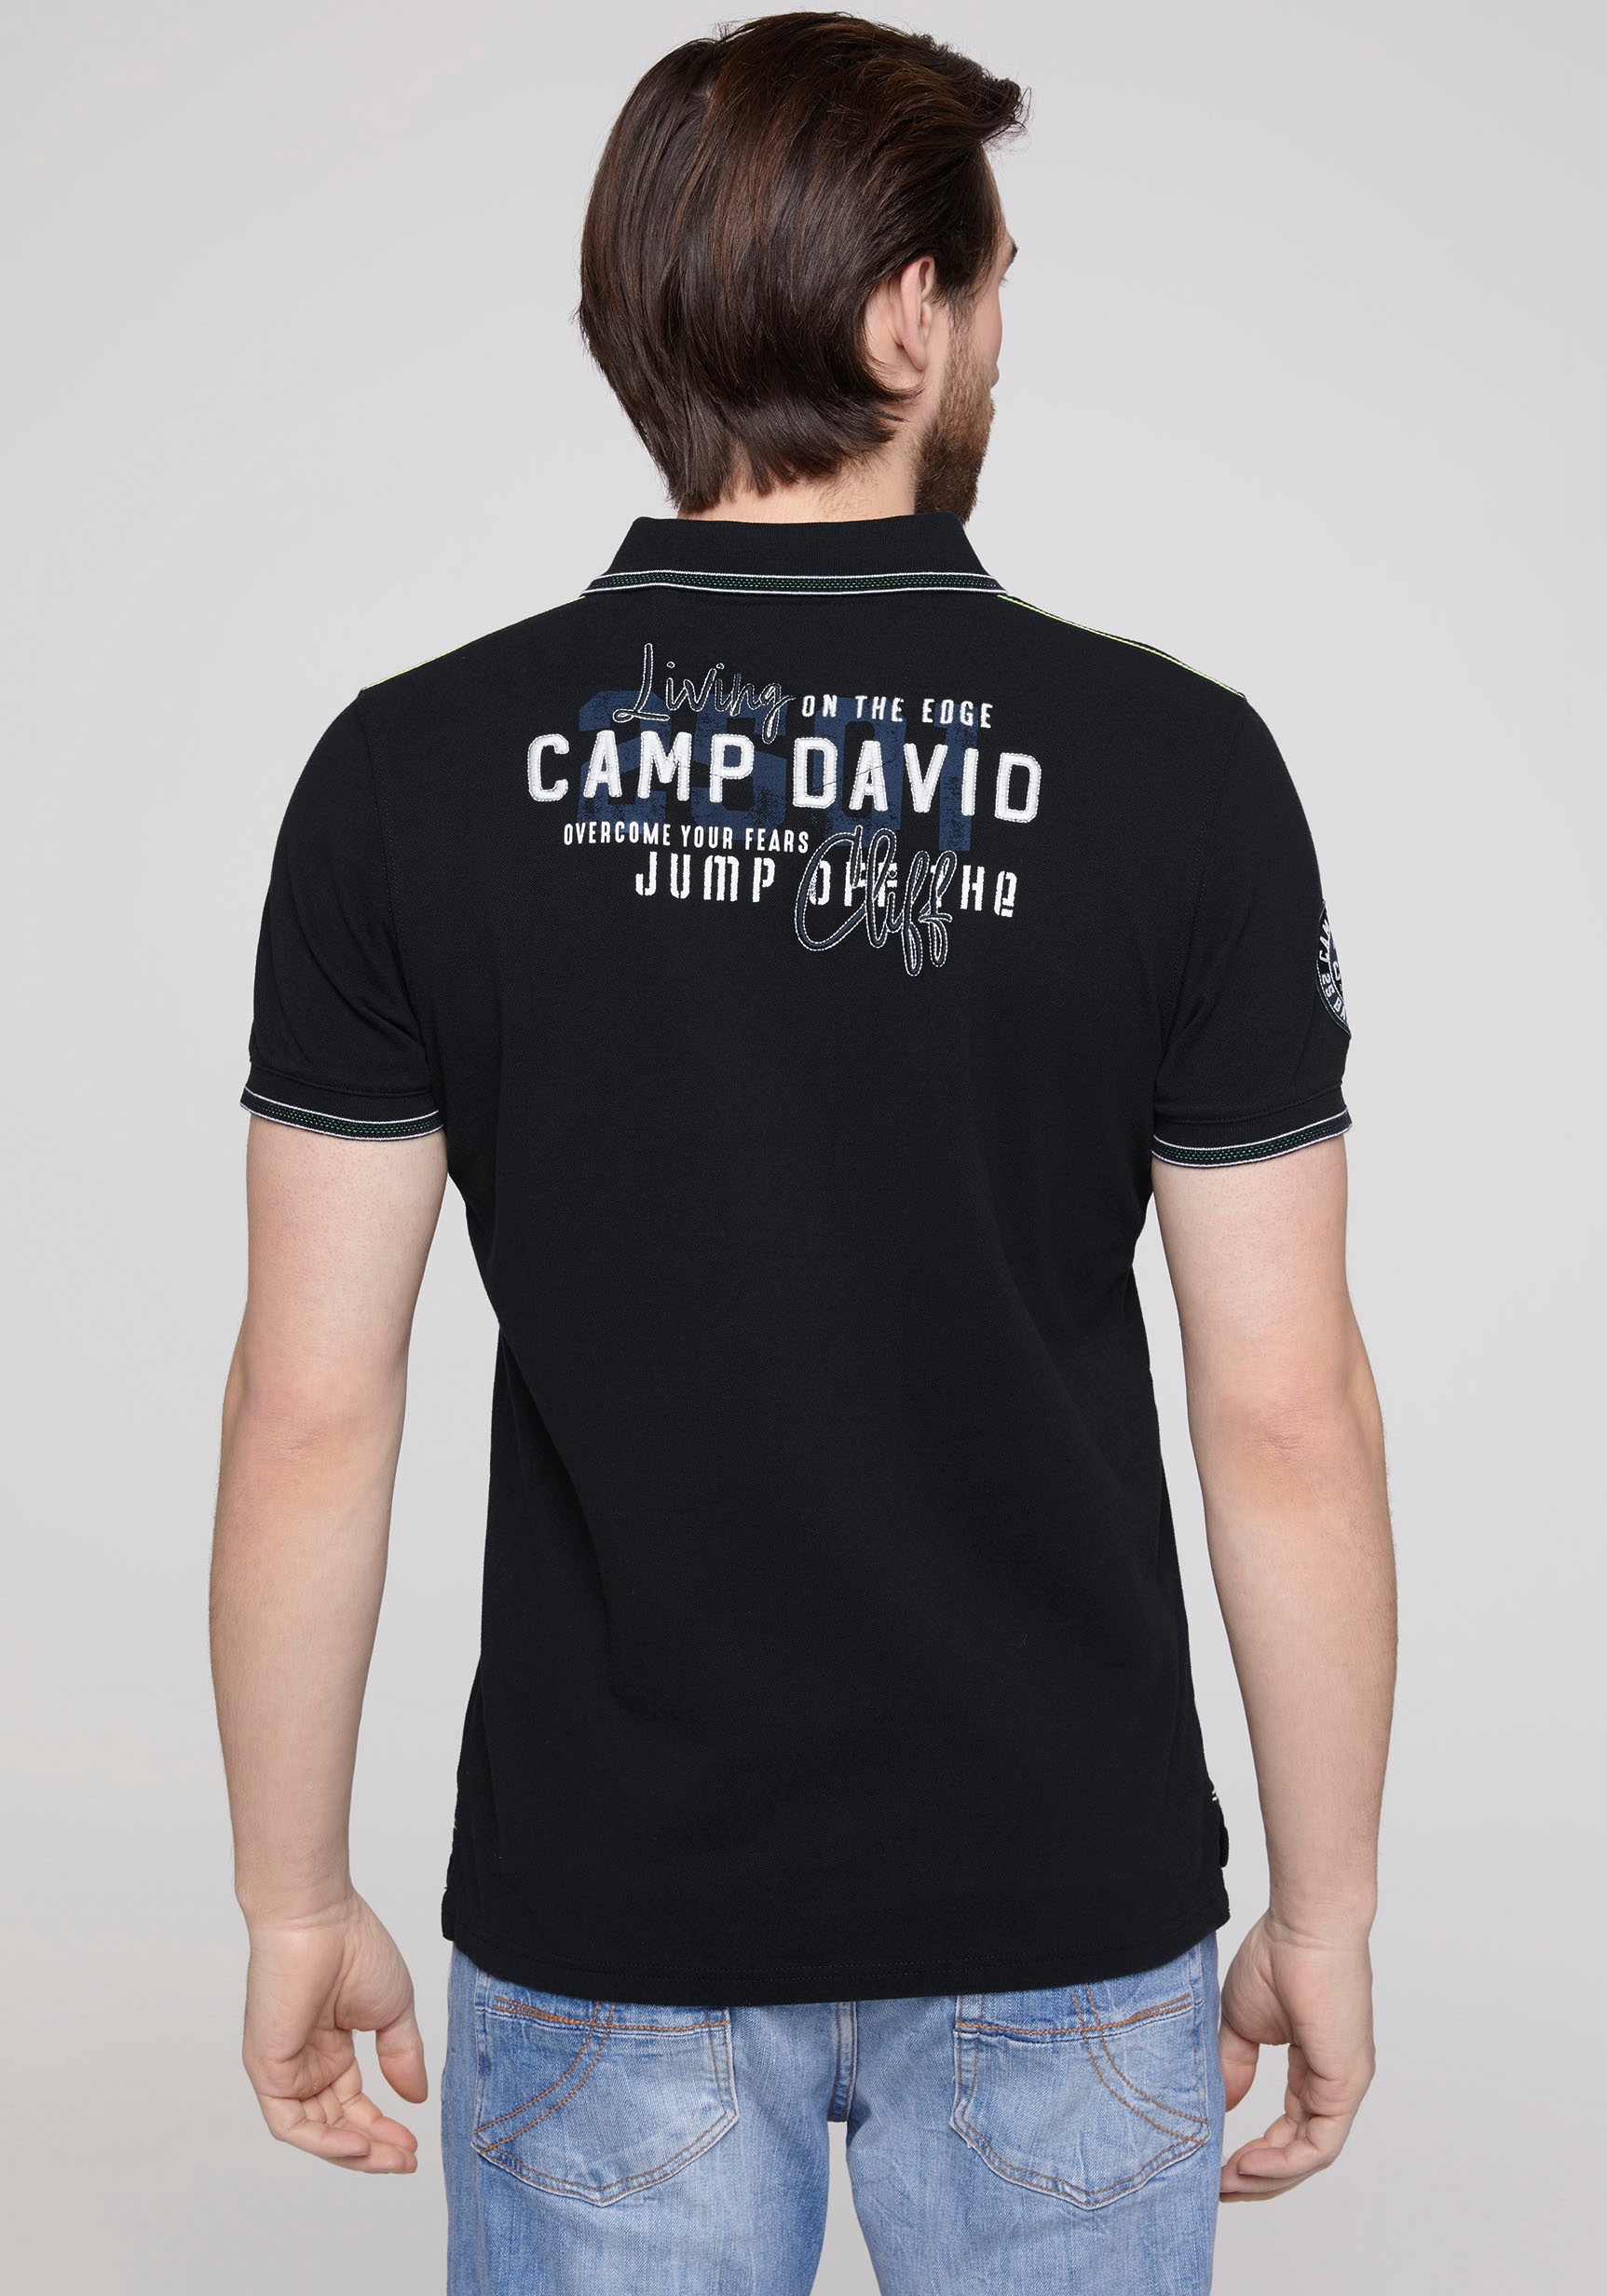 CAMP DAVID Poloshirt, mit Kontrastnähten auf den Schultern Découvrir sur